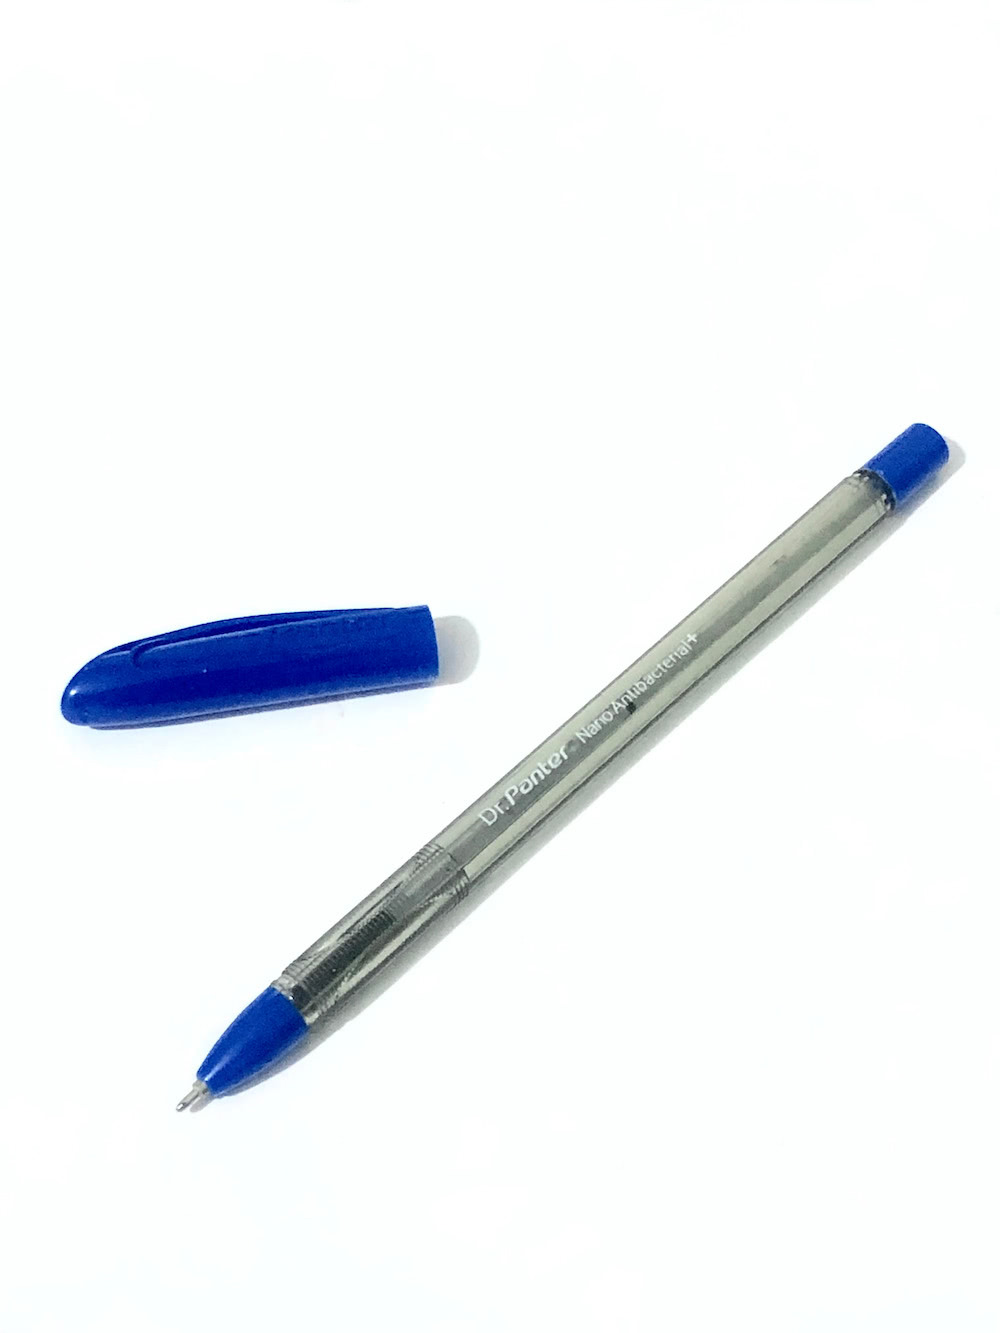 یک خودکار آبی که هنوز مانده